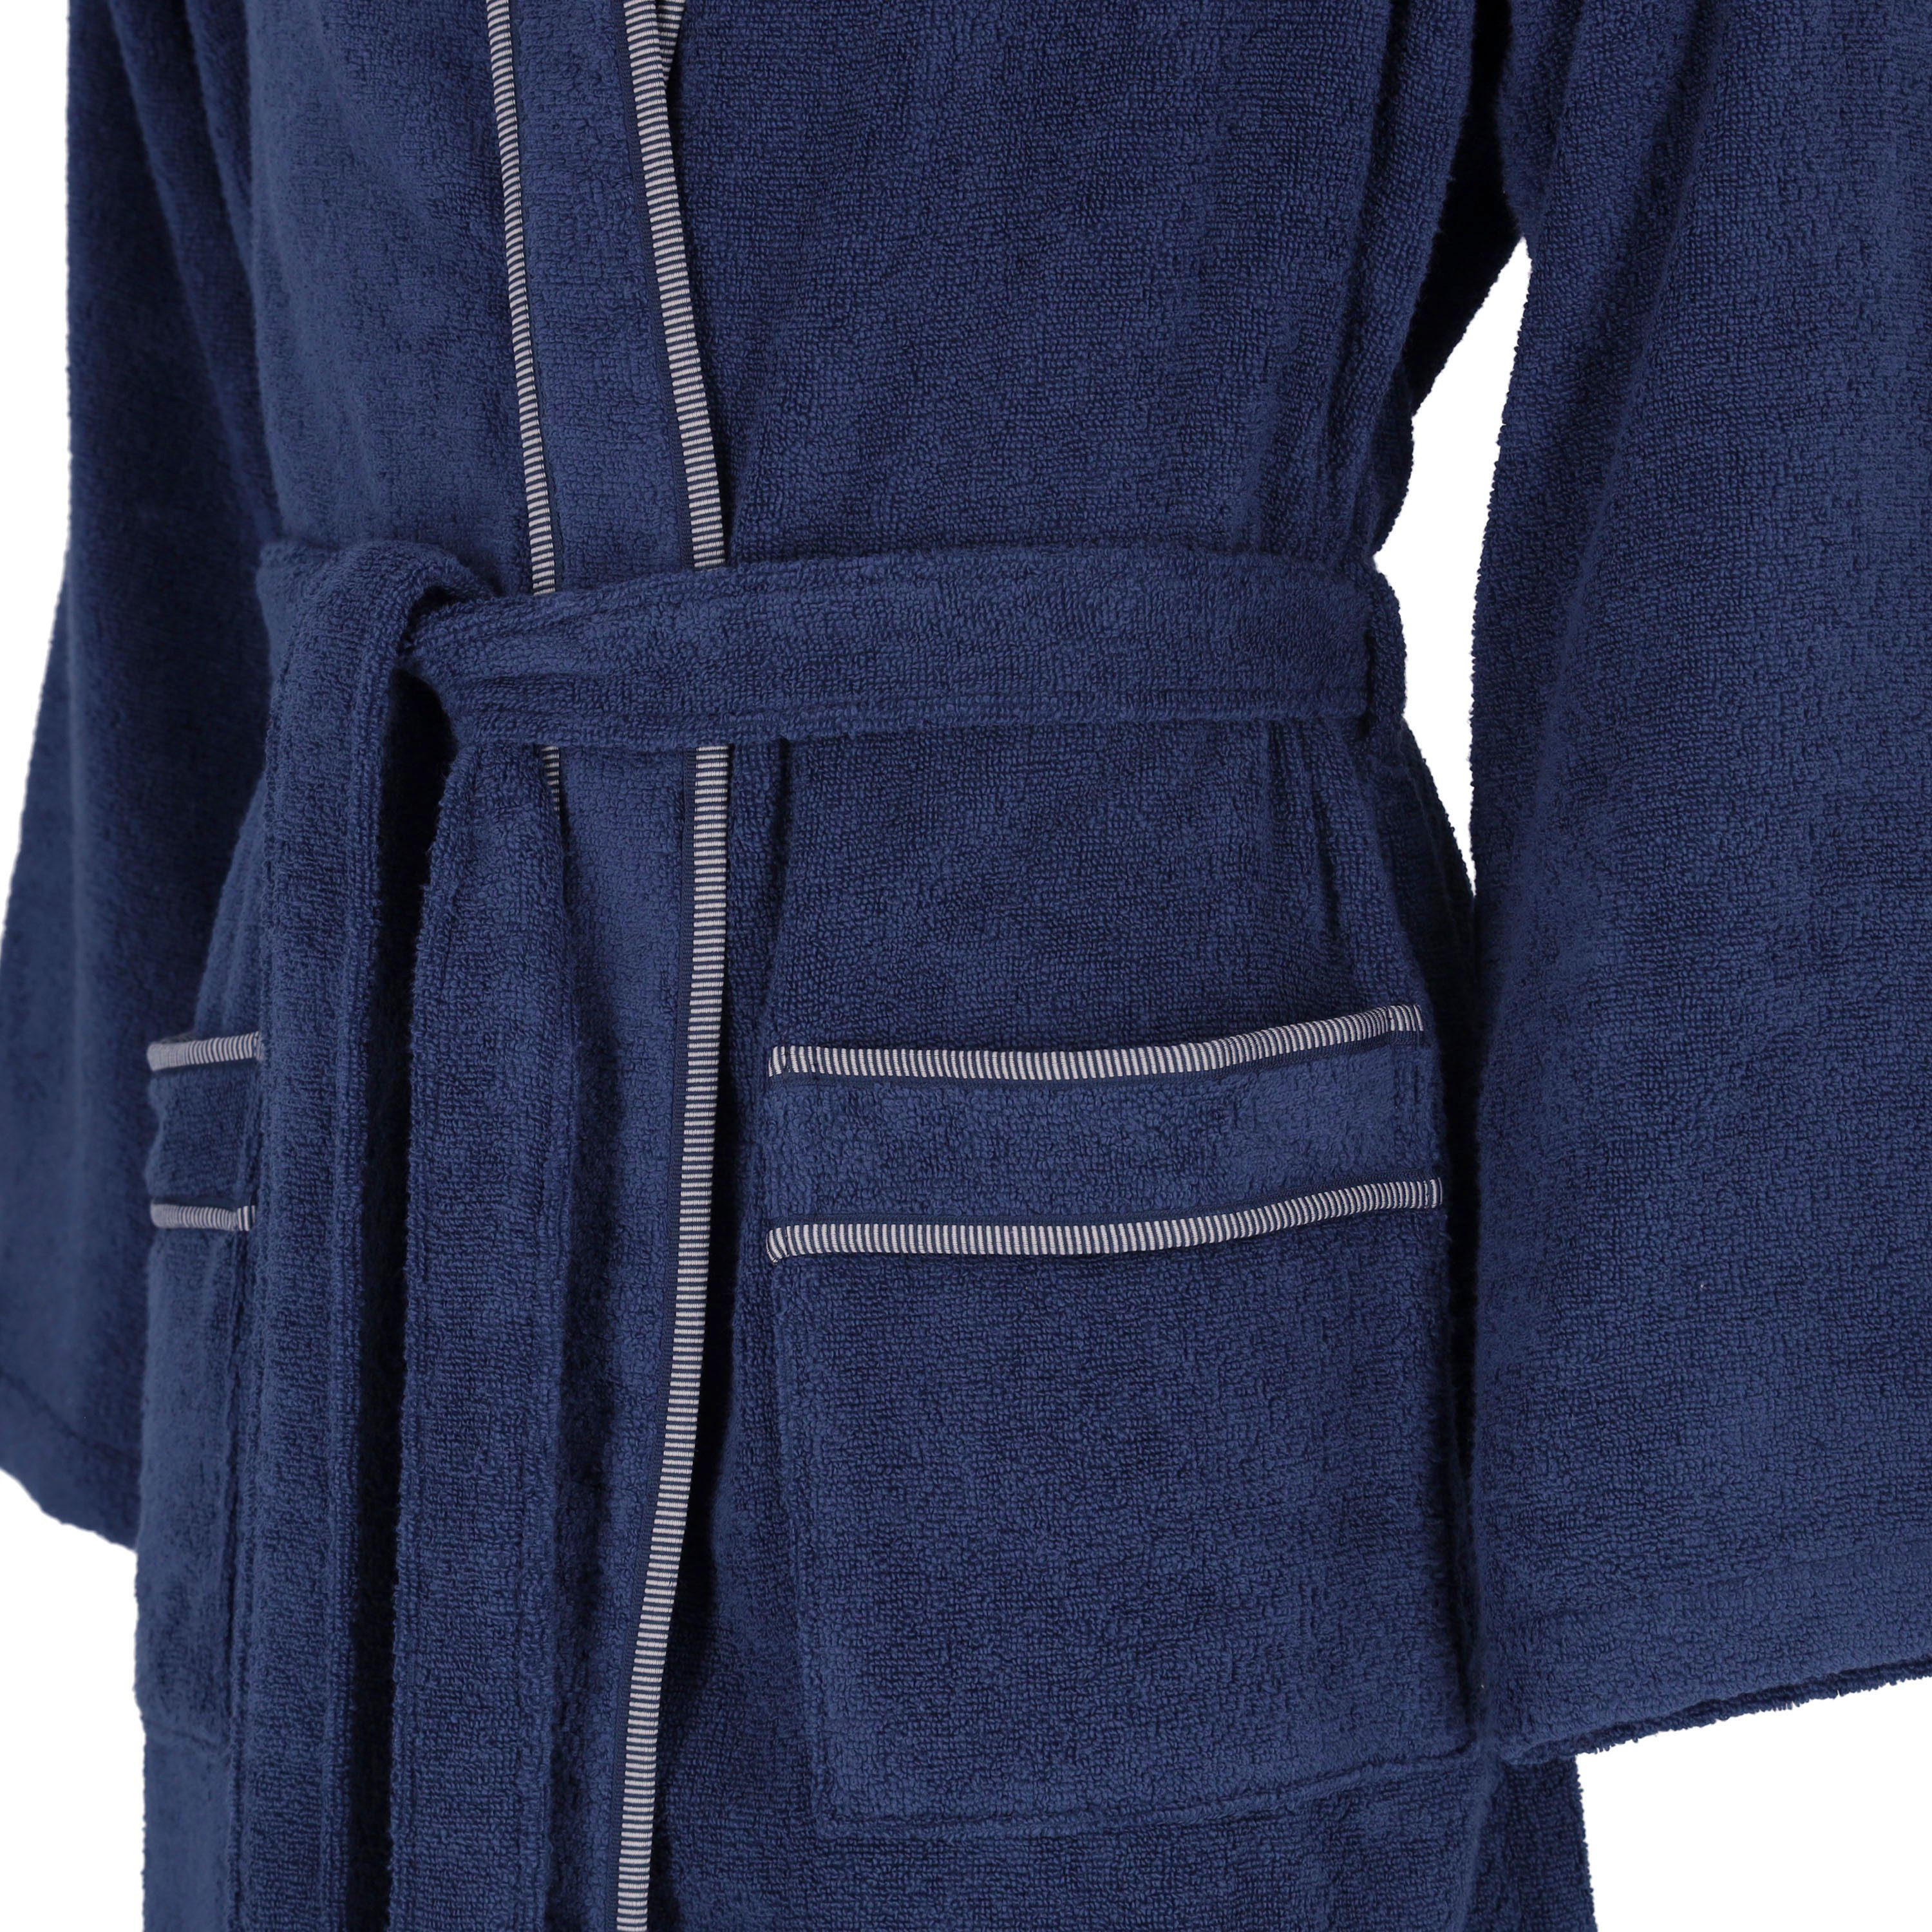 Vossen Herrenbademantel Jack, Kimono-Kragen, Gürtel Langform, blau marine Baumwolle